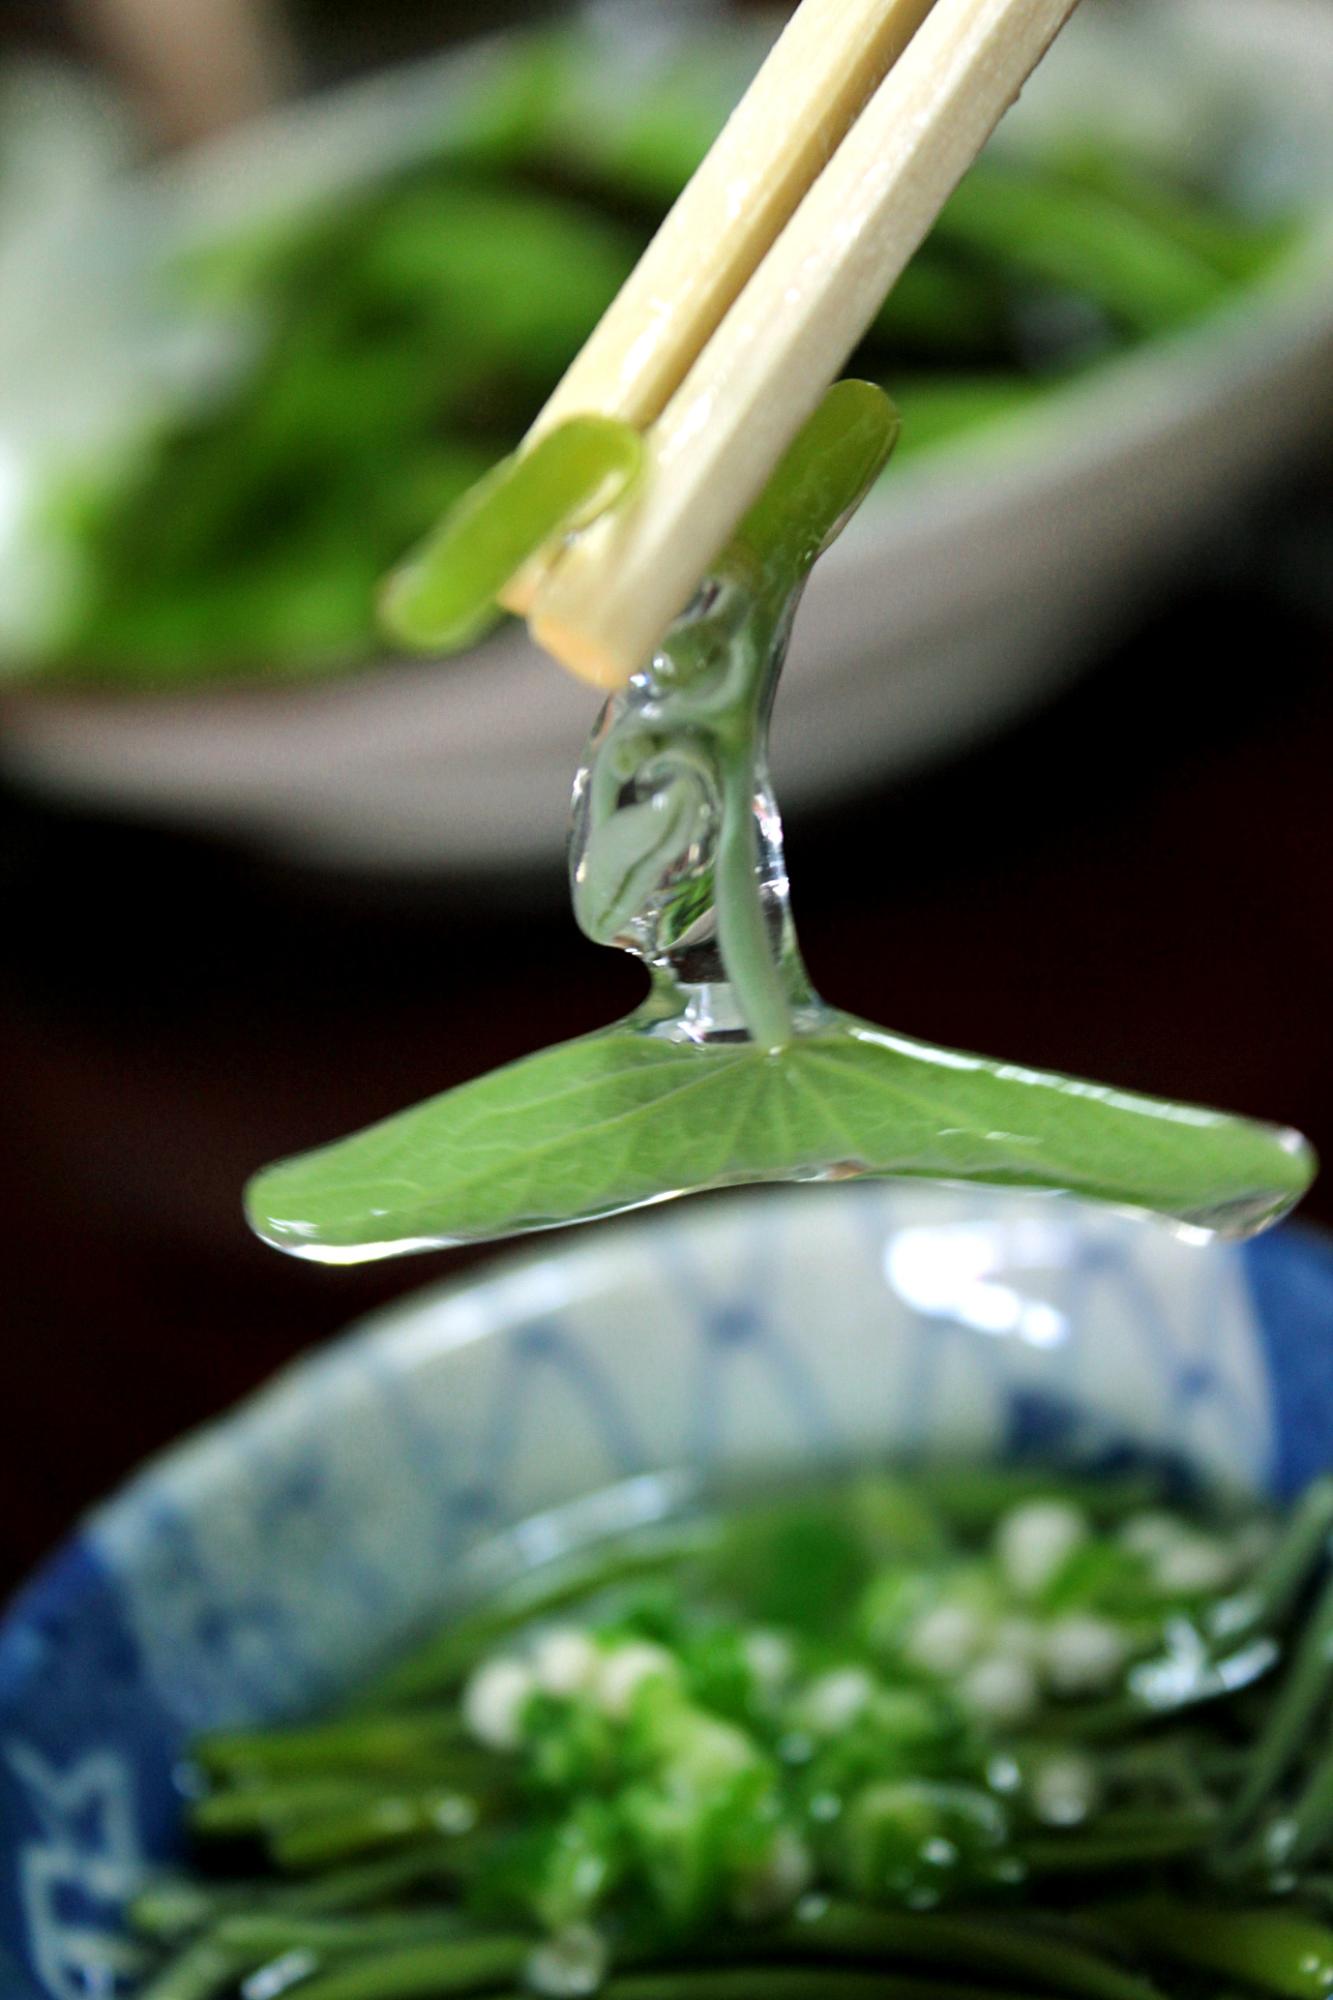 プルンとした透明なジェルを帯びた緑色のじゅんさいを箸で挟んでいる写真